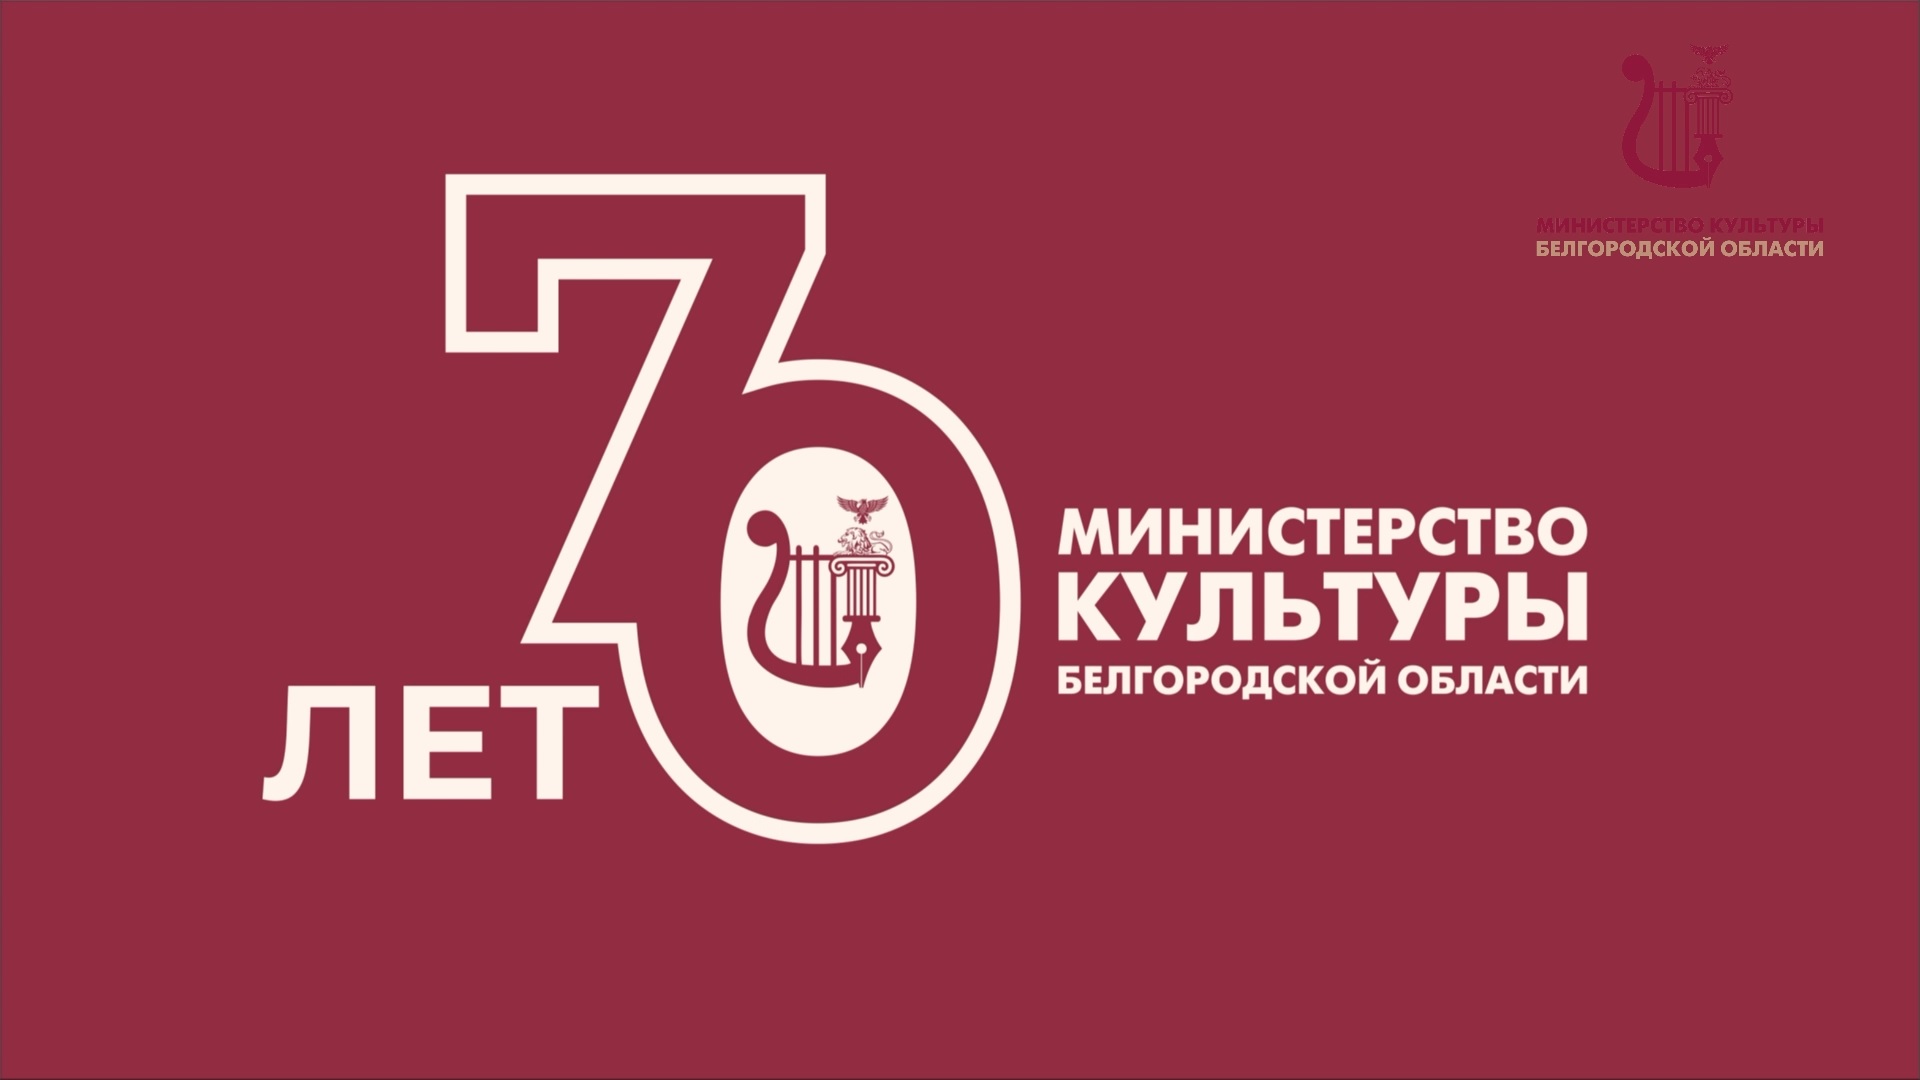 70-летний юбилей Министерства культуры Белгородской области.